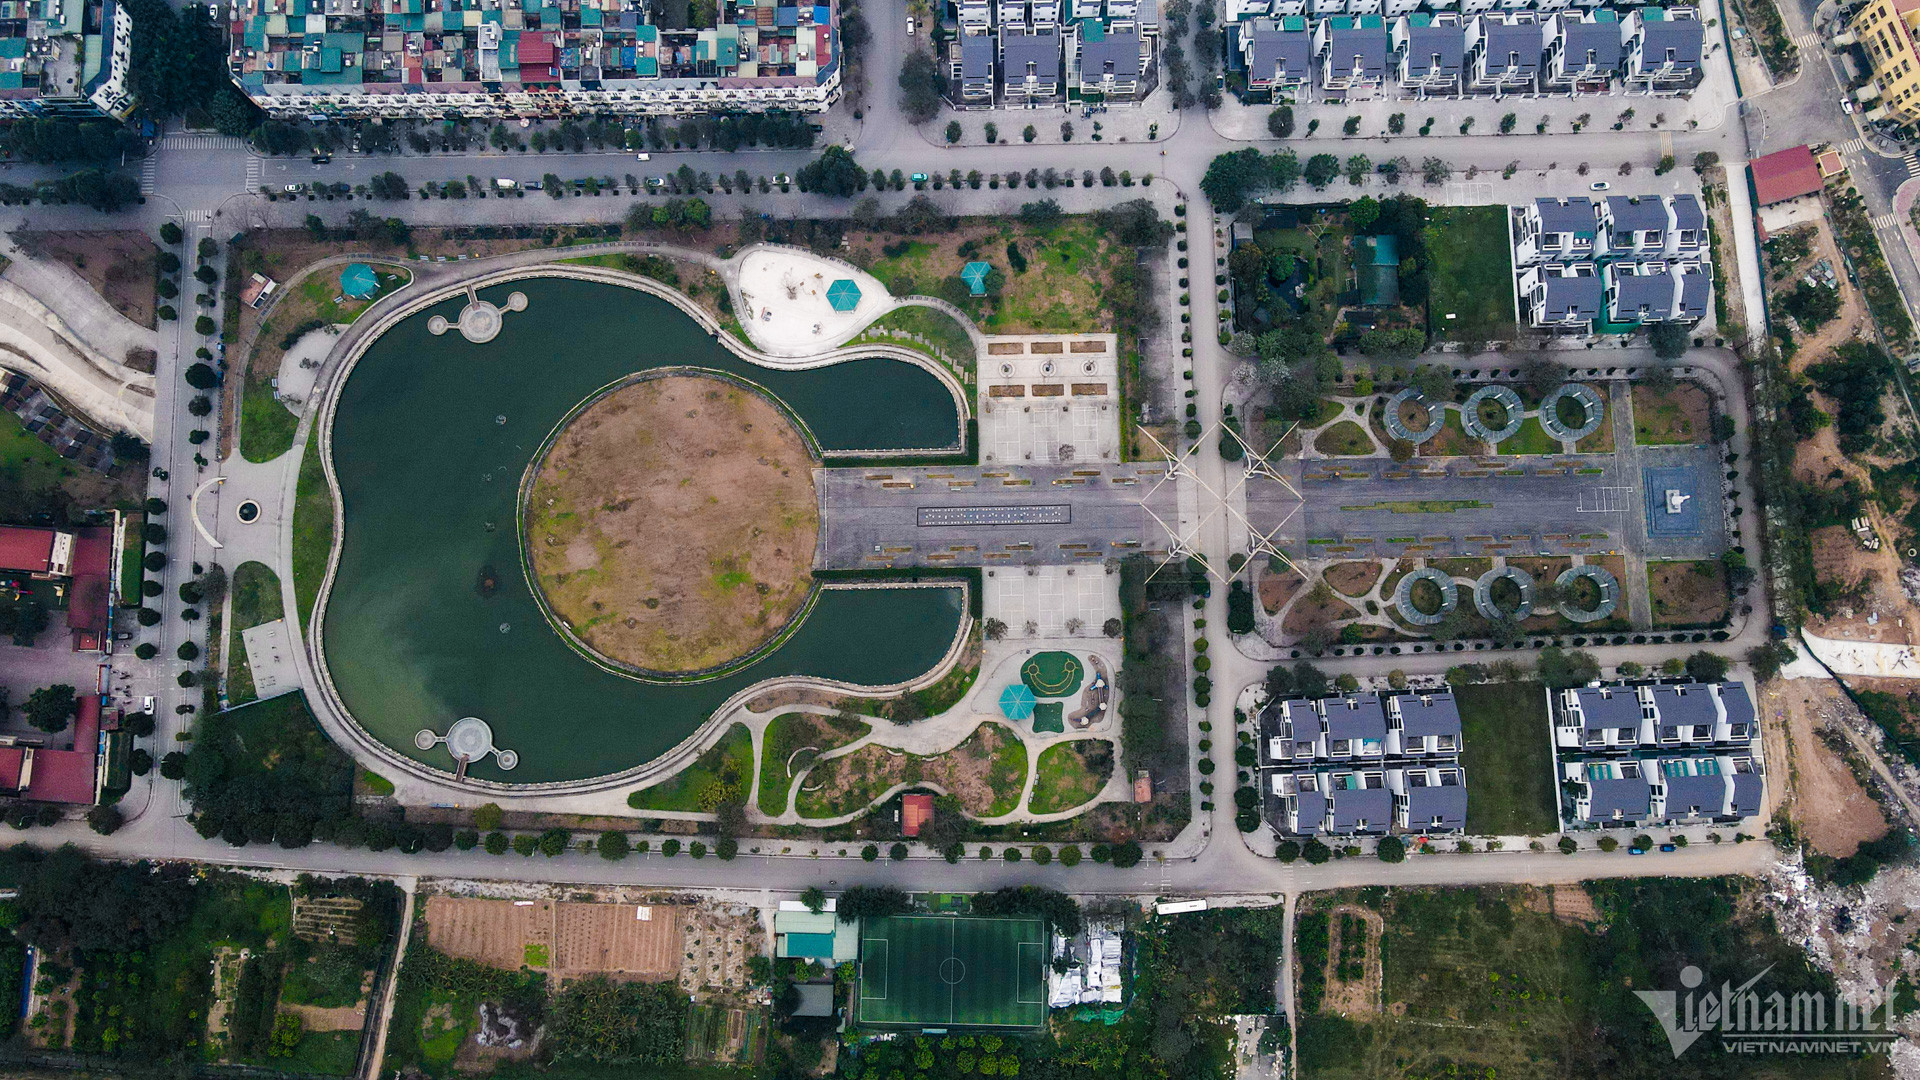 View - Nhiều cảnh trái khoáy trong Công viên âm nhạc ở Hà Nội